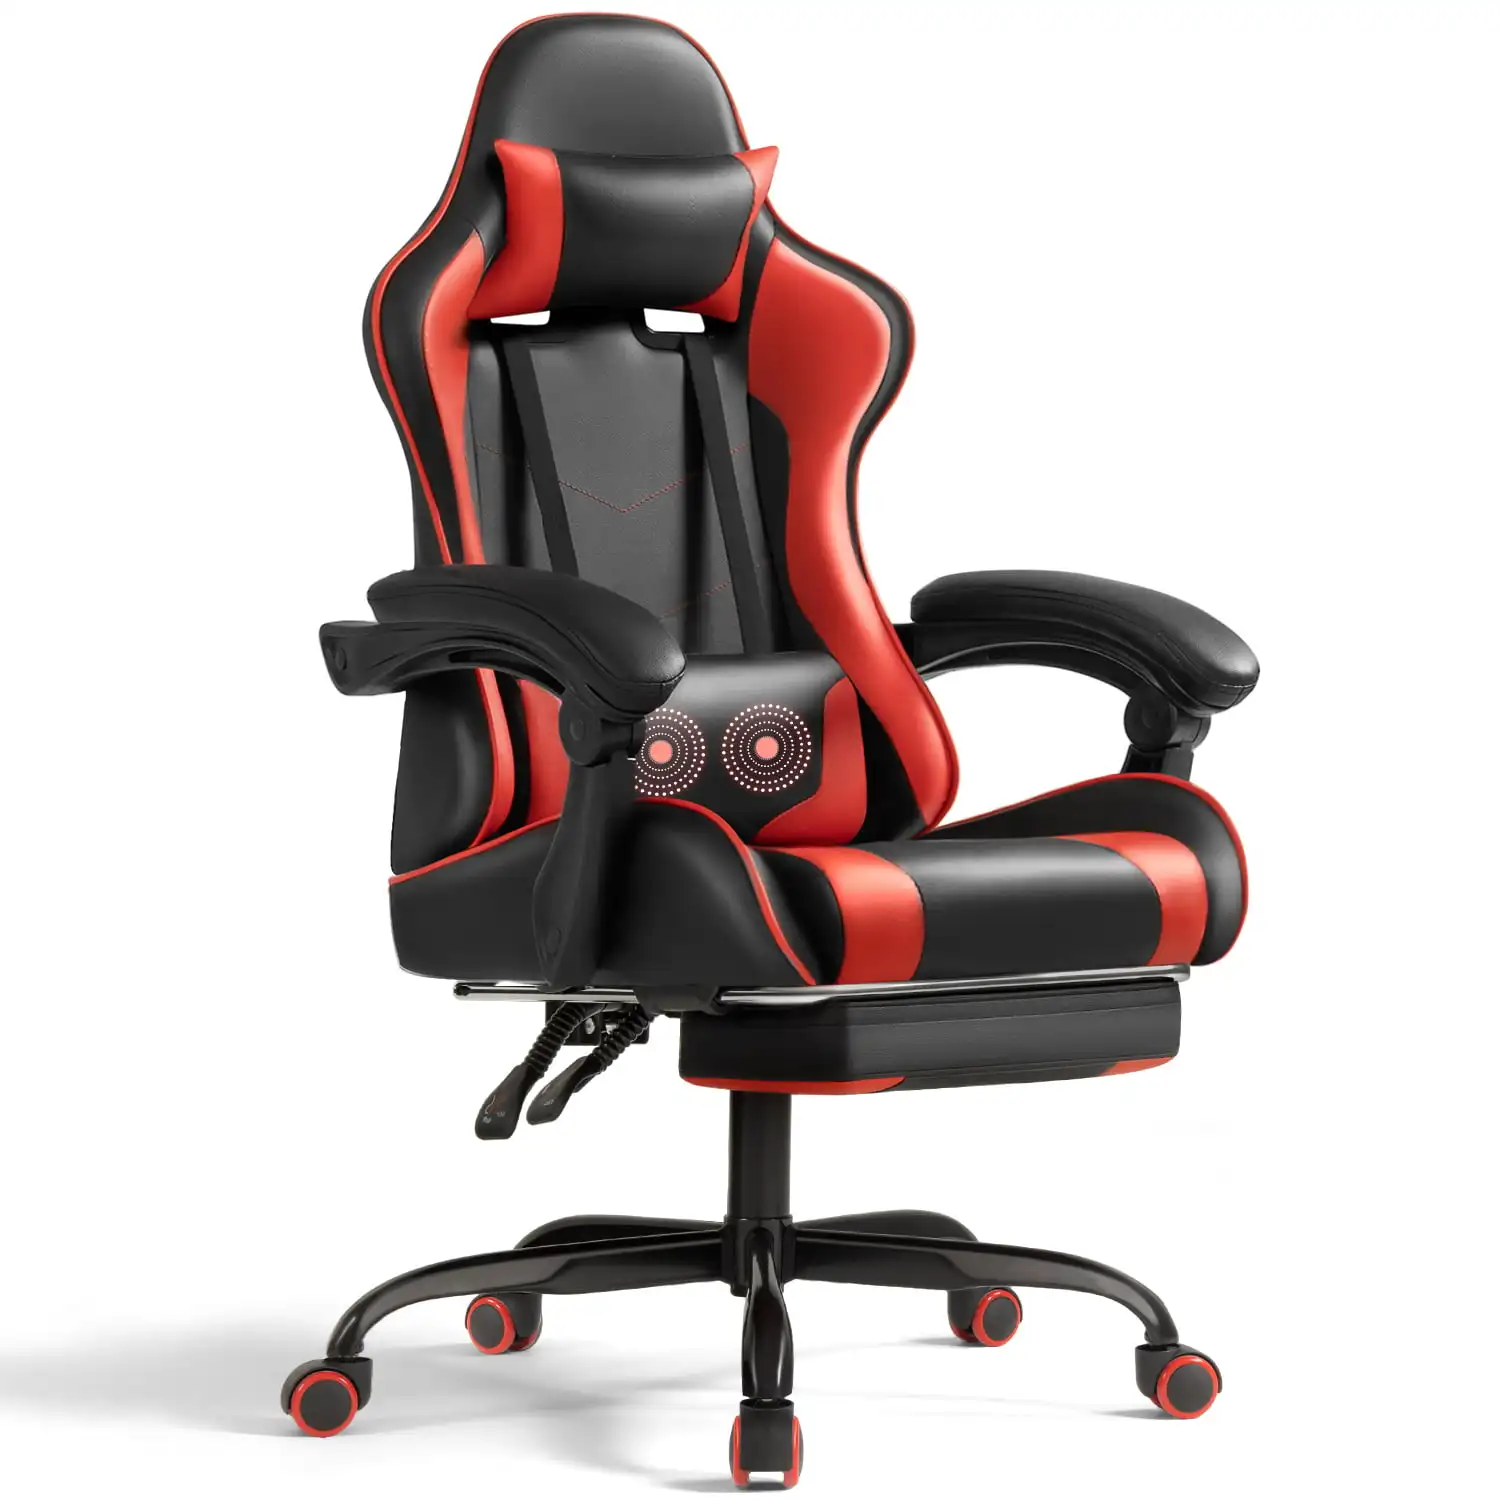 Игровое кресло Lacoo из искусственной кожи, Массажное Эргономичное кресло для геймеров, регулируемое по высоте Компьютерное кресло с подставкой для ног и поясничной поддержкой, красный